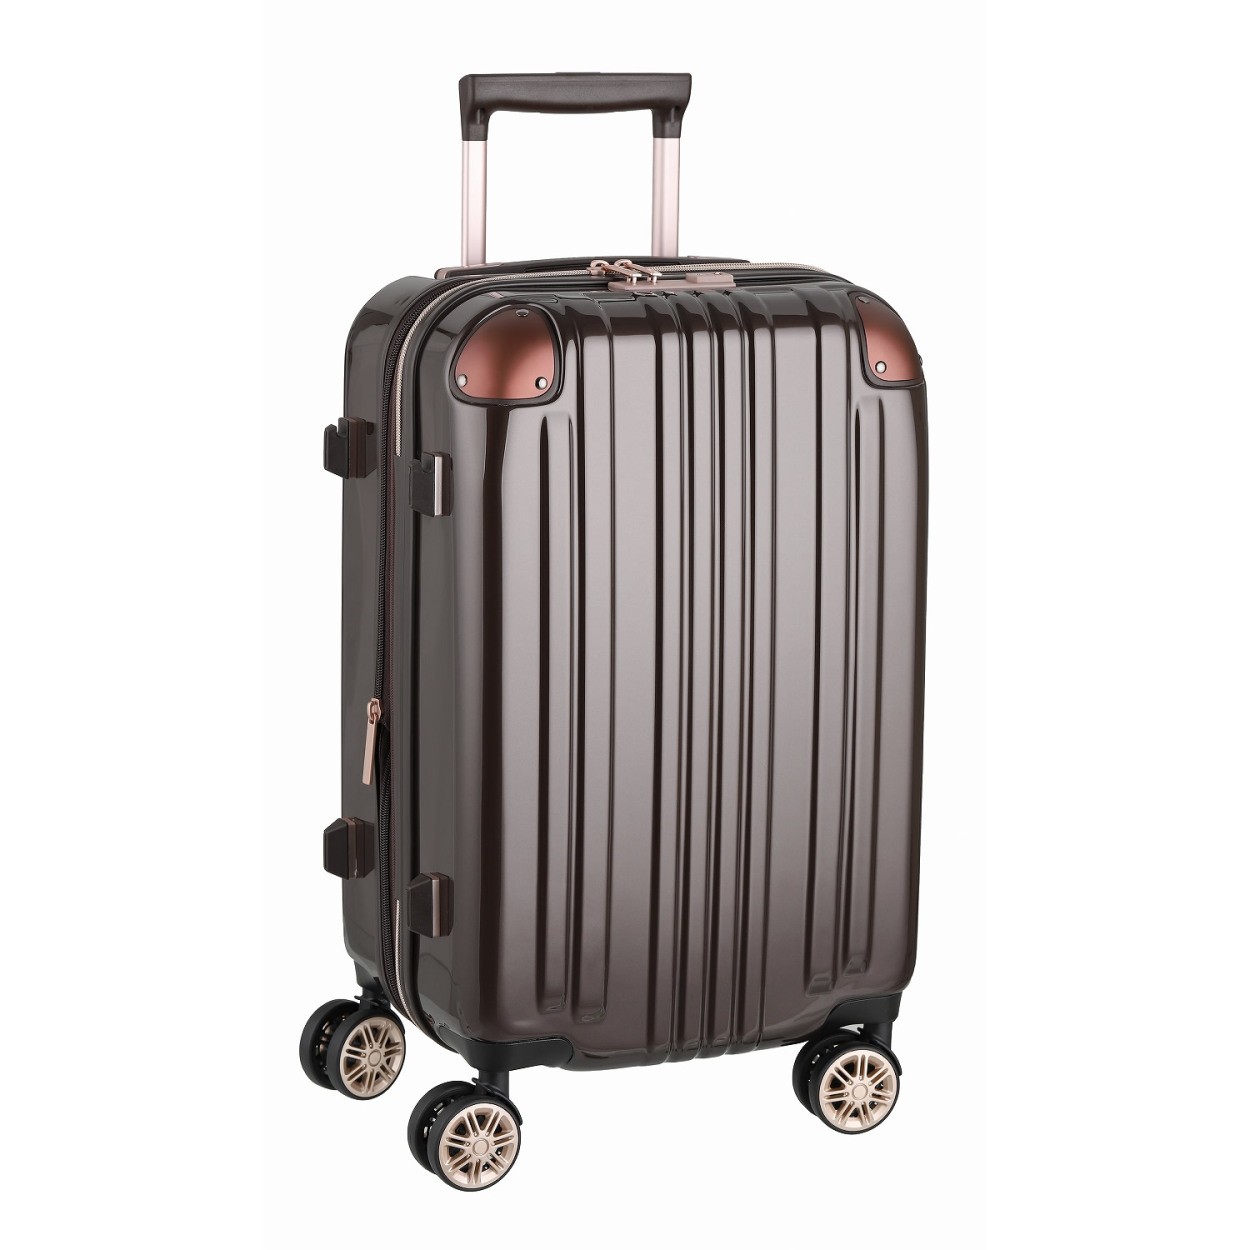 アウトレット スーツケース キャリーケース キャリーバッグ トランク 小型 軽量 Sサイズ おしゃれ 静音 ハード ファスナー 拡張 B-5122-55